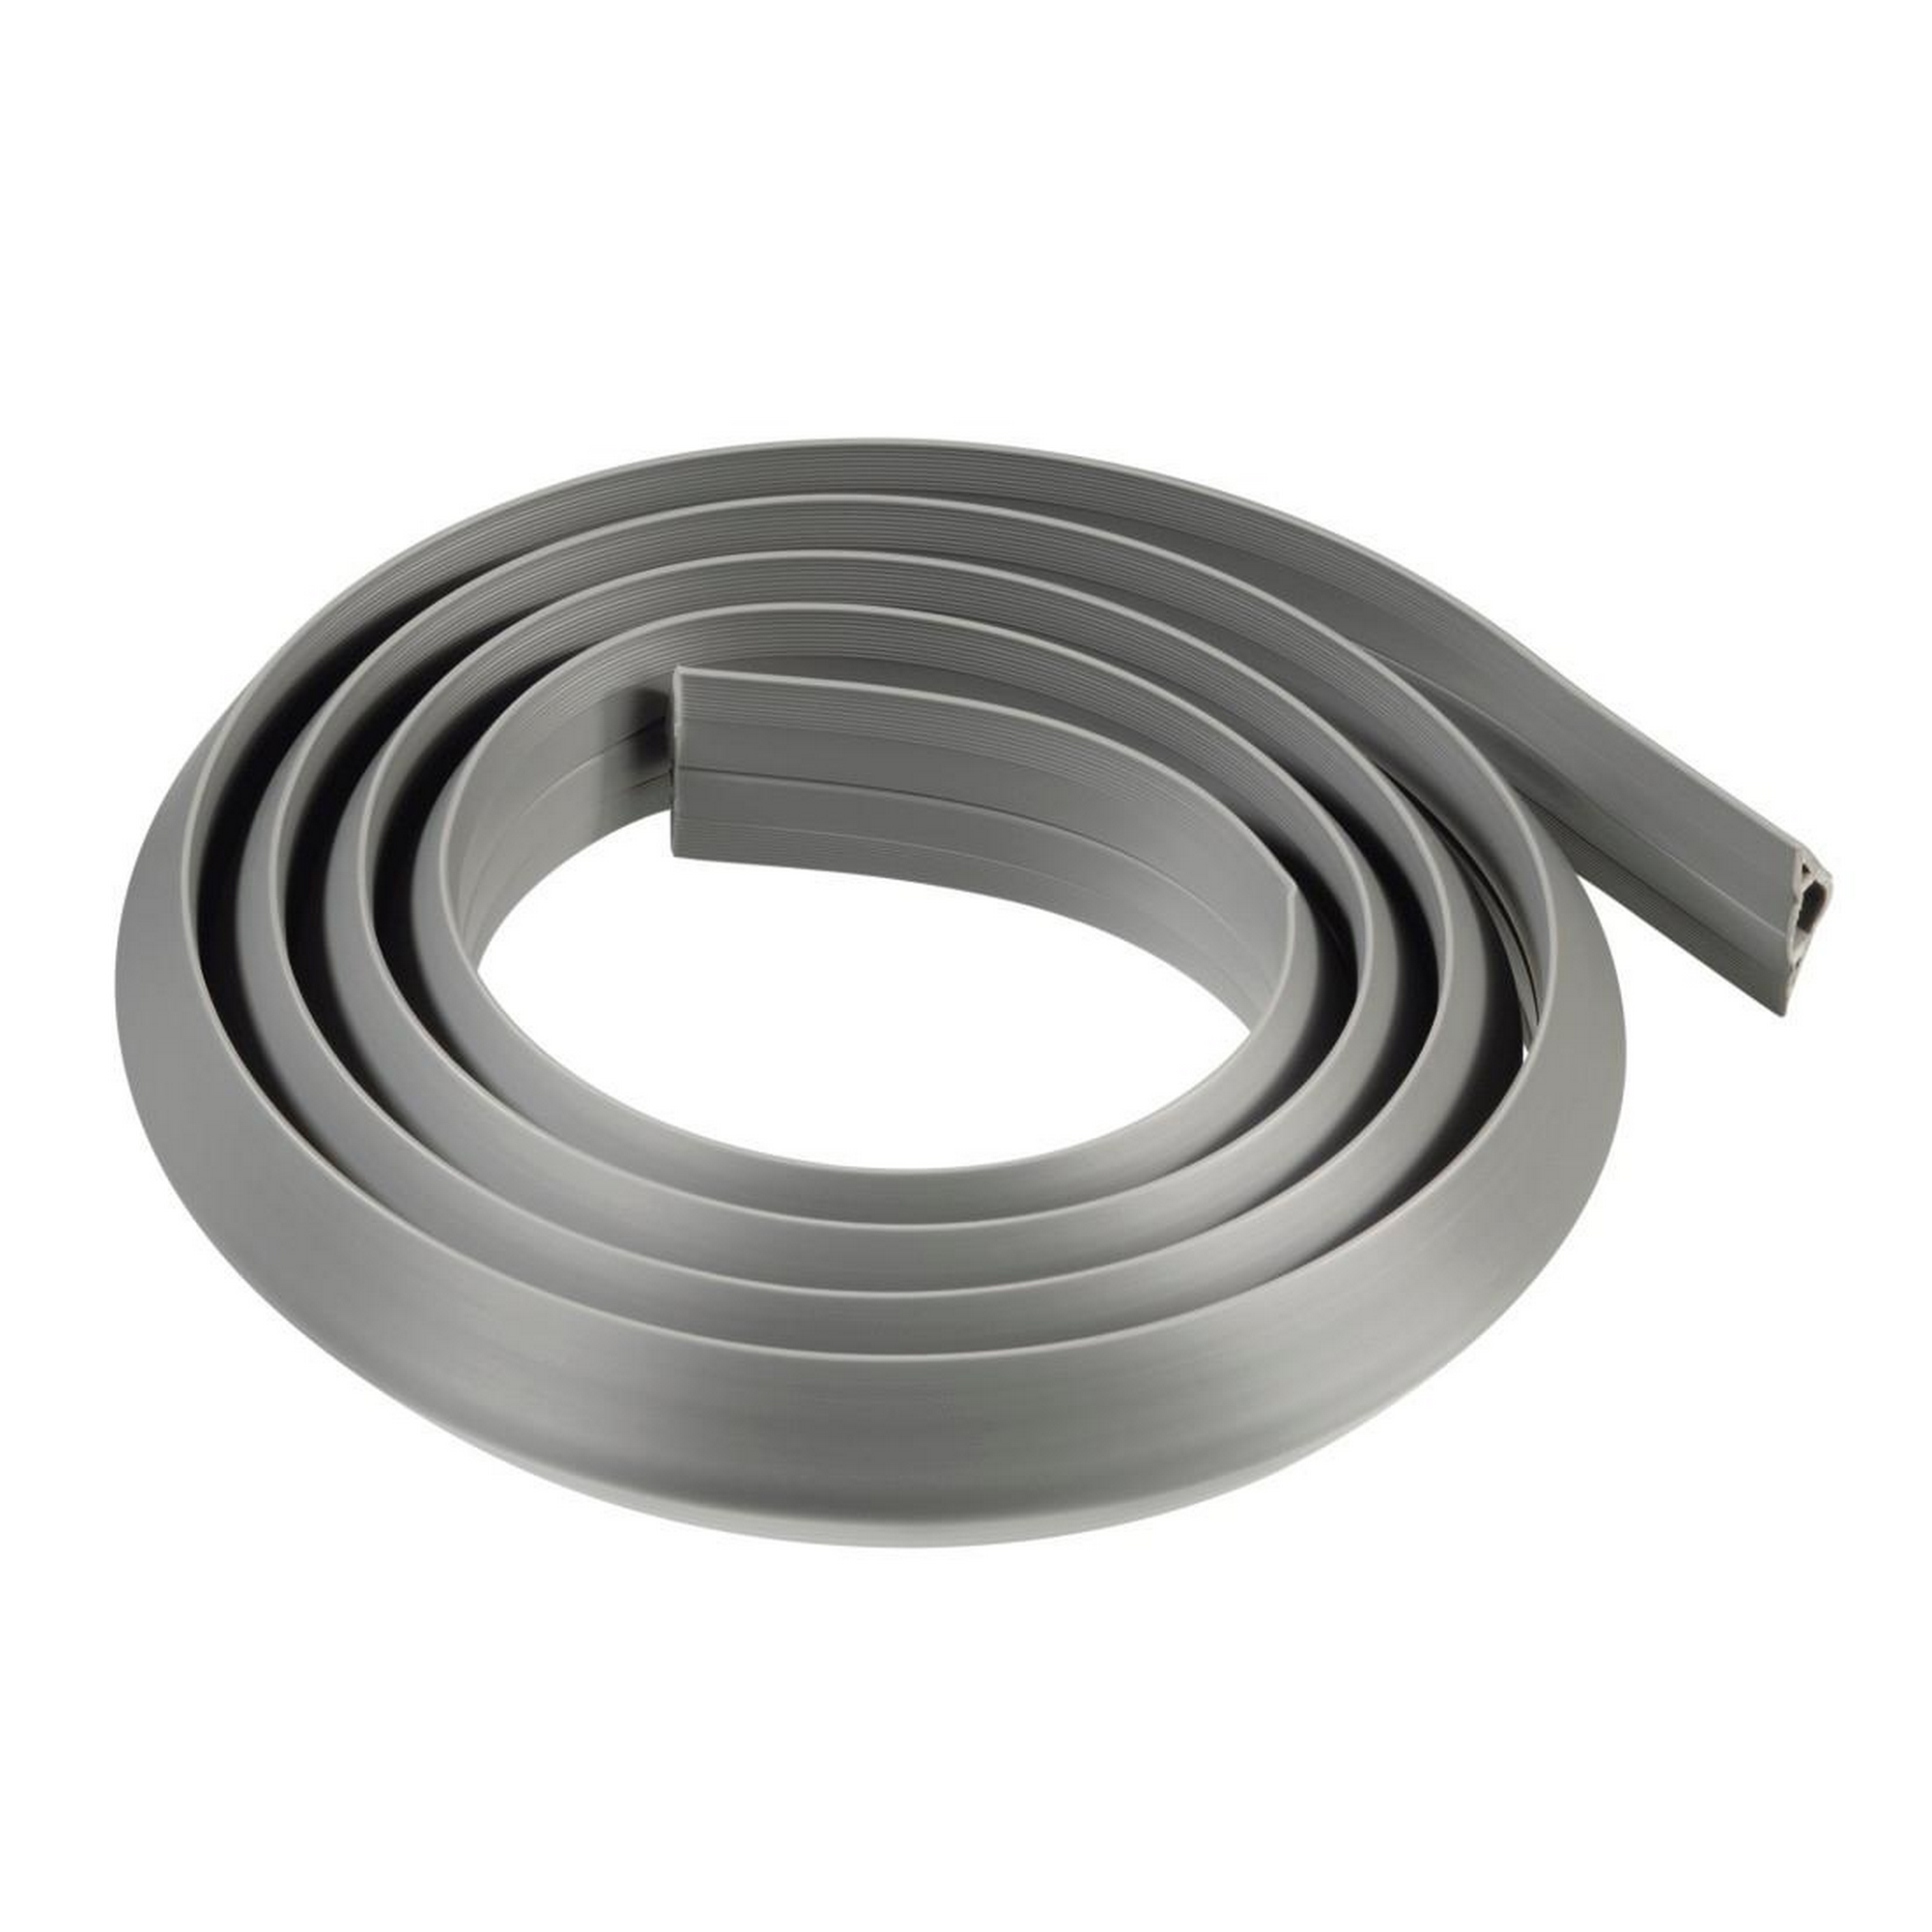 Kabelkanal grau flexibel selbstklebend halbrund, 180 x 3 x 1 cm + product picture